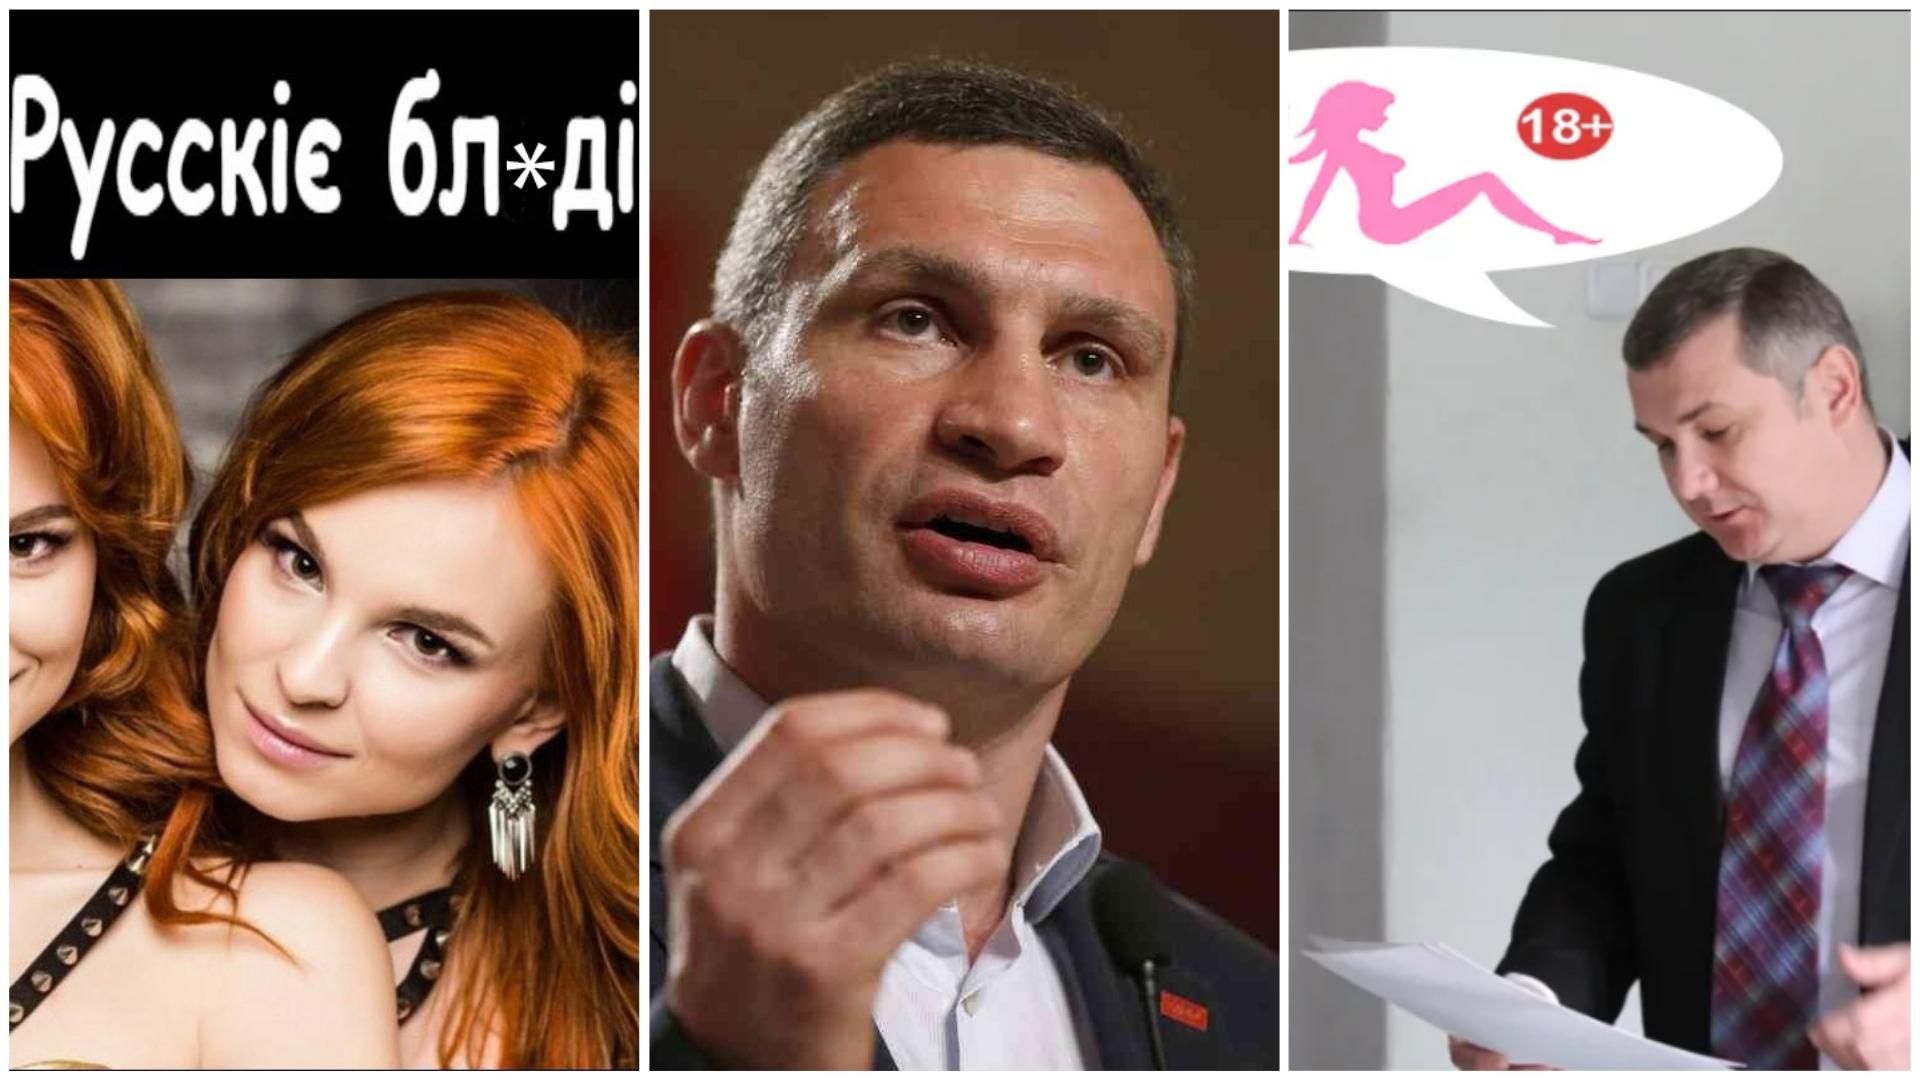 Найсмішніші меми тижня: "Русскіє бл*ді" на Євробаченні, Кличко і кожен другий, порно в облраді